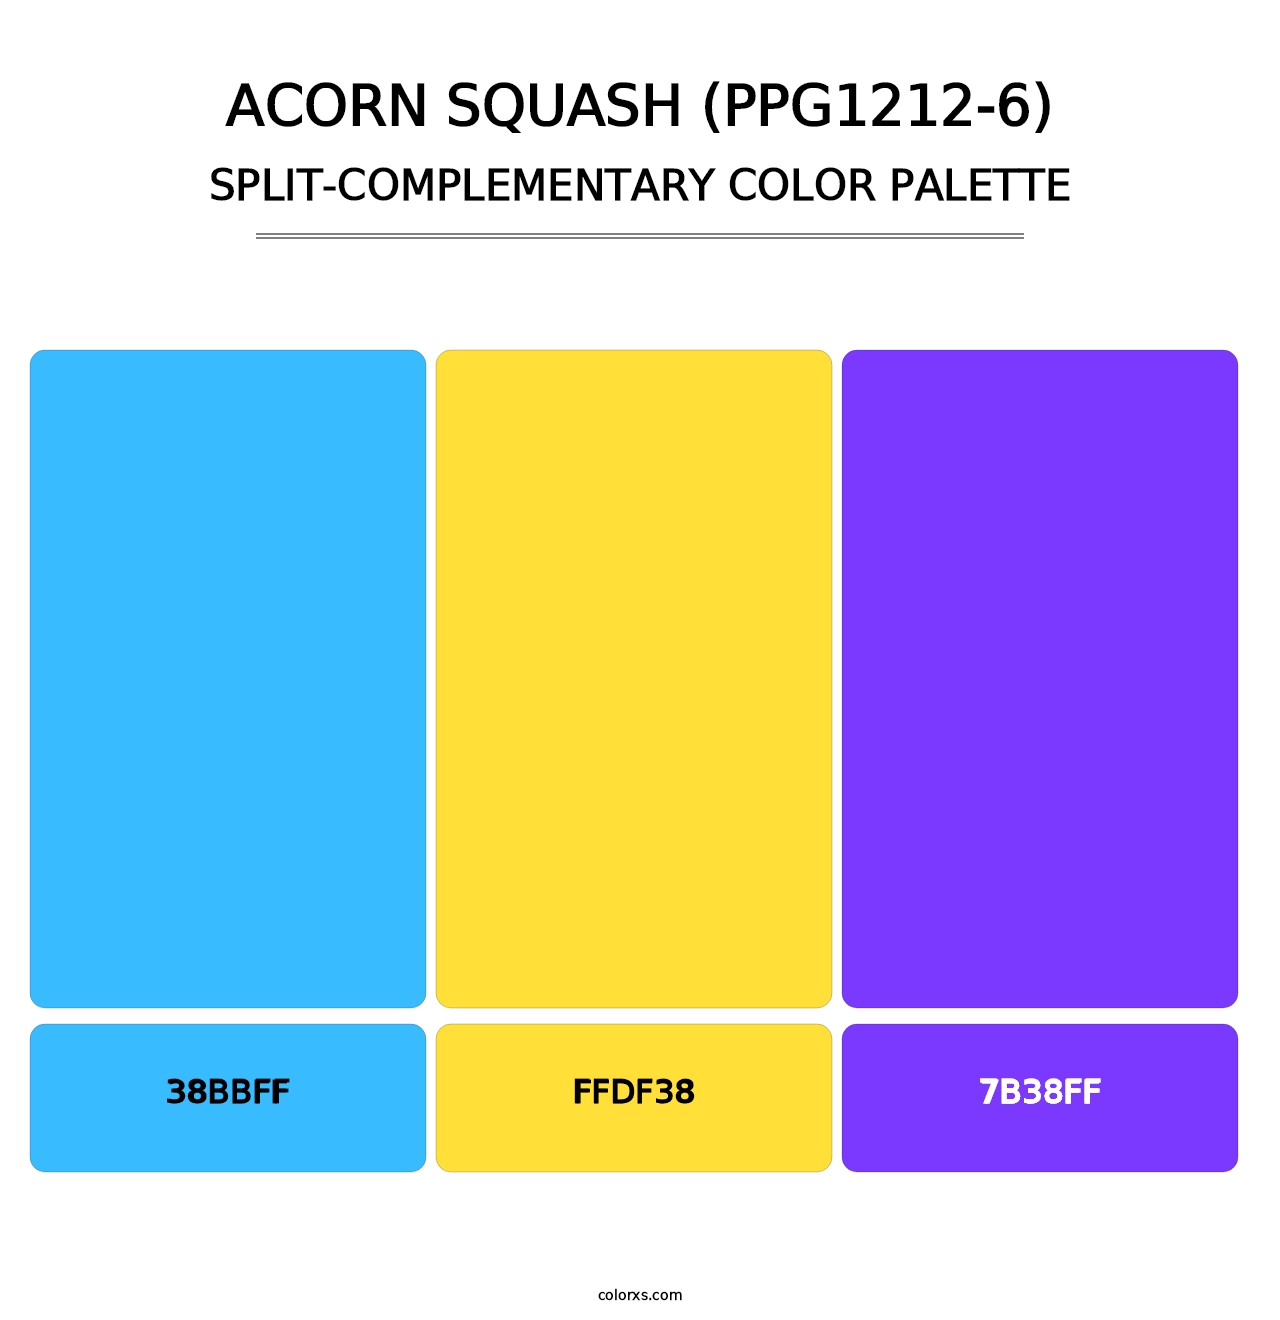 Acorn Squash (PPG1212-6) - Split-Complementary Color Palette